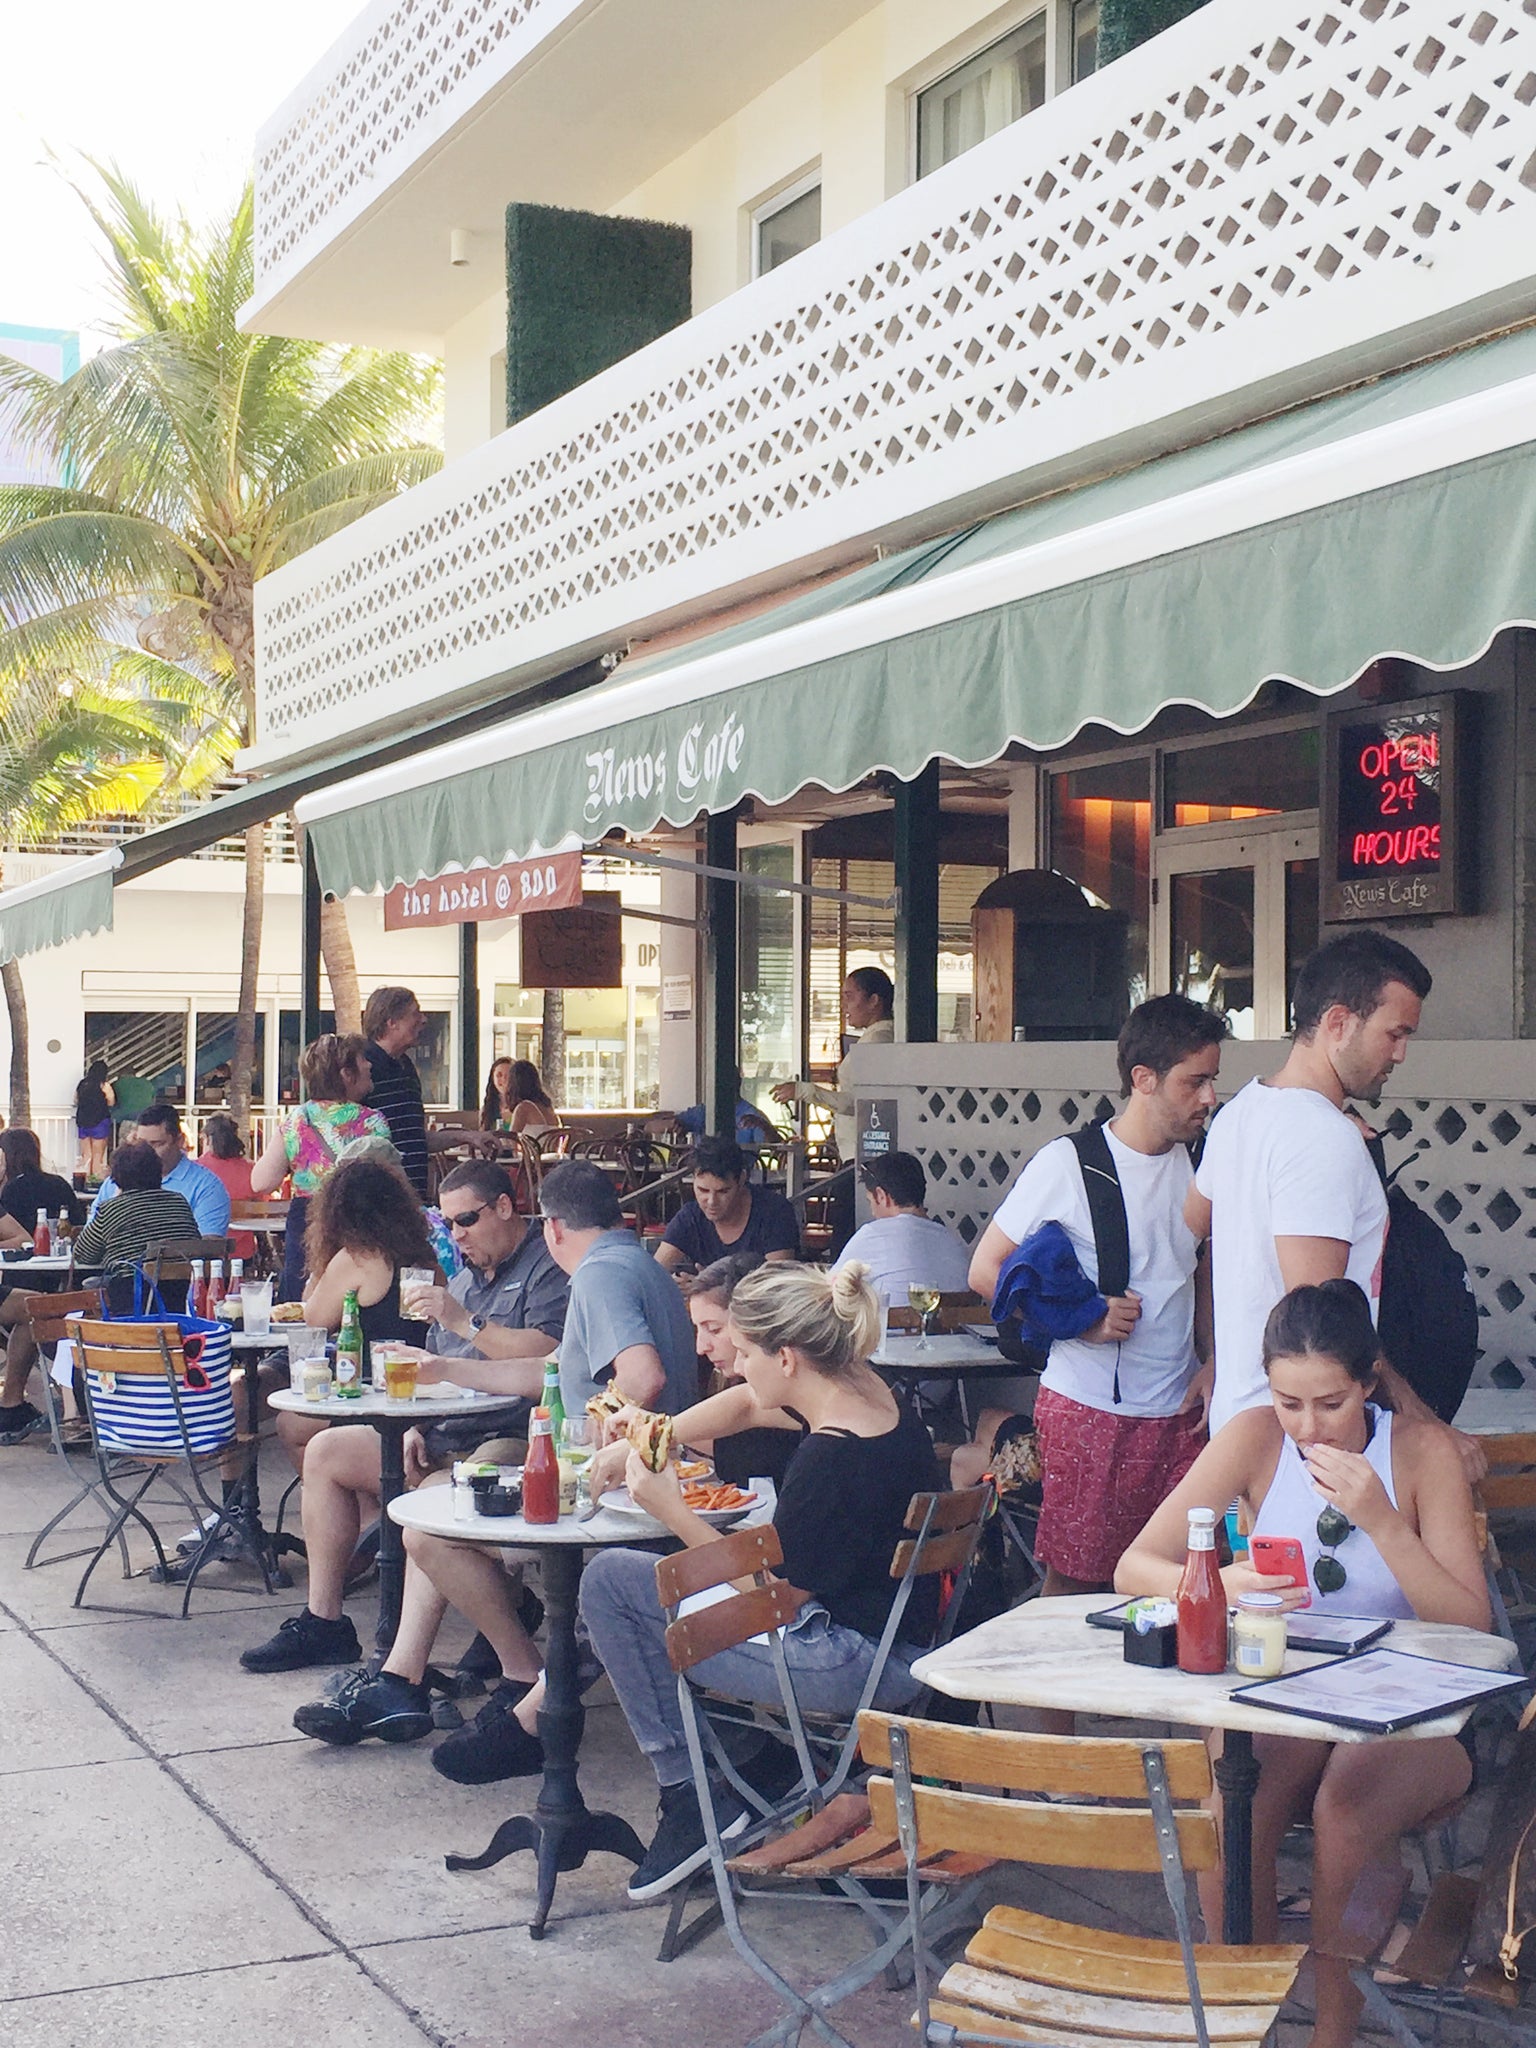 New Cafe sidewalk Miami